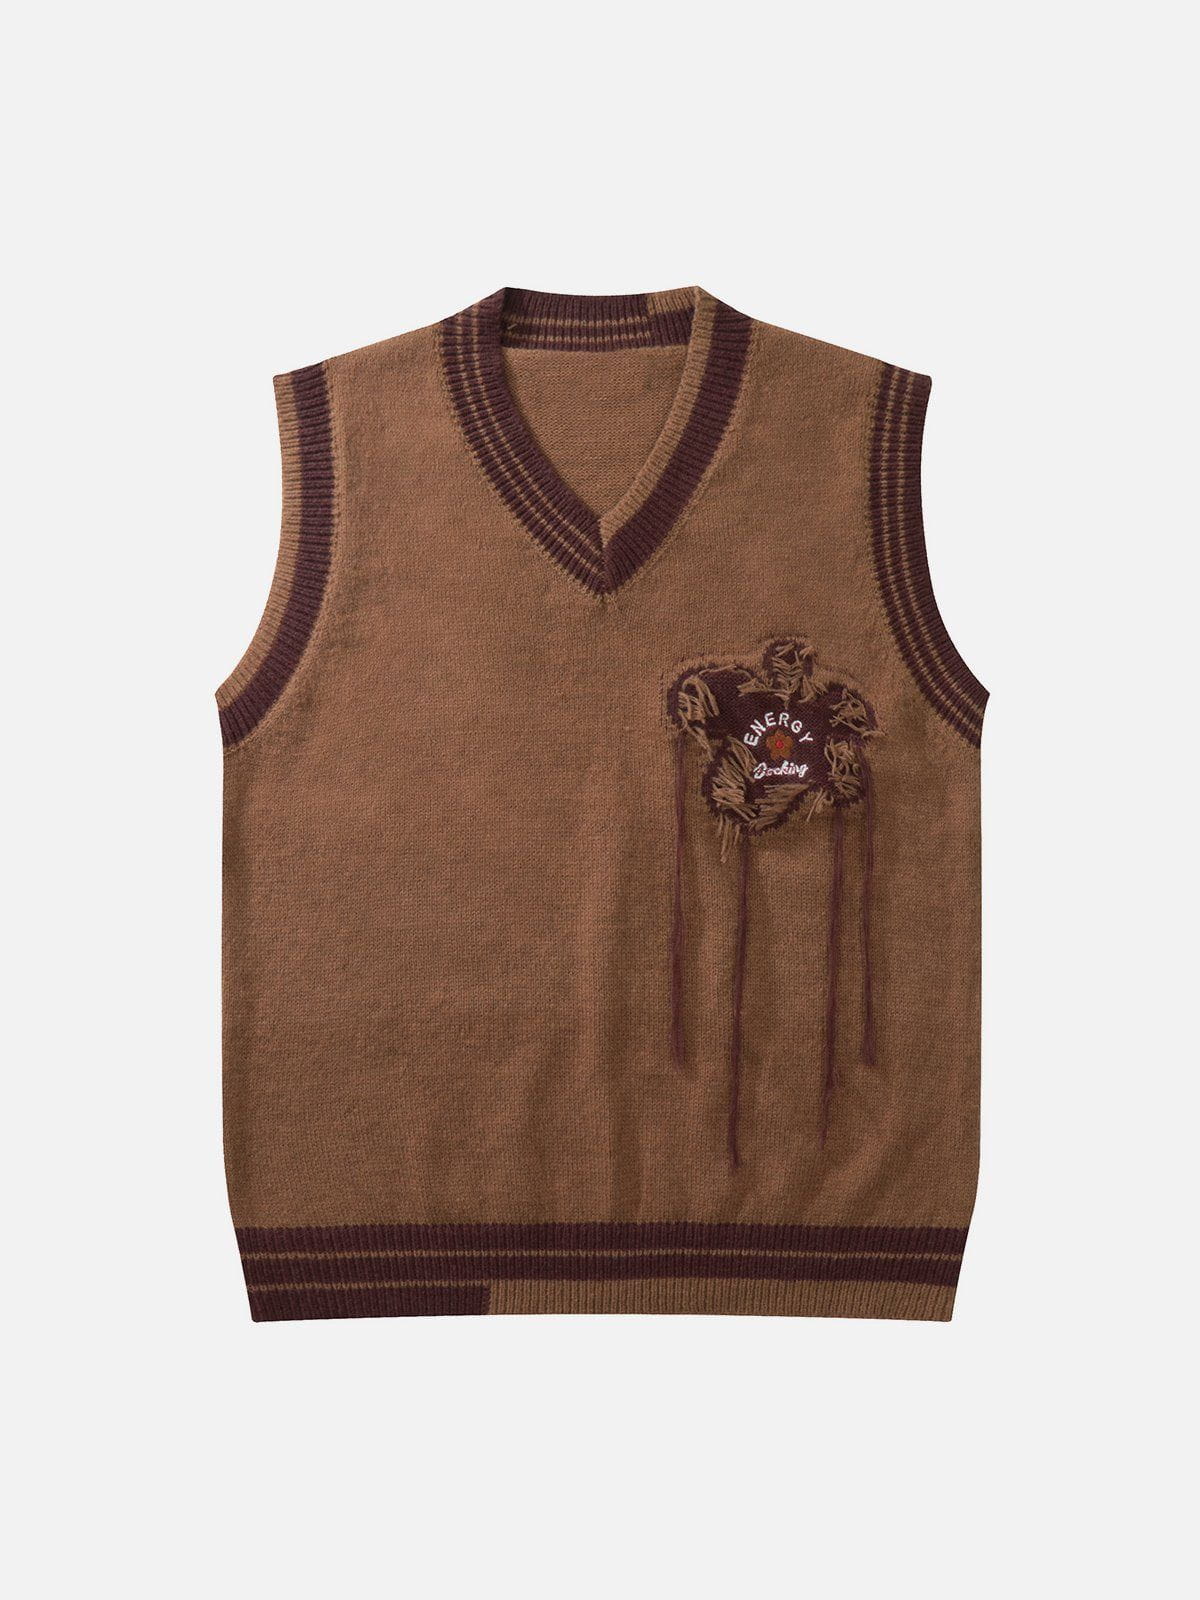 TALISHKO™ - Fringe Floral Jacquard Sweater Vest